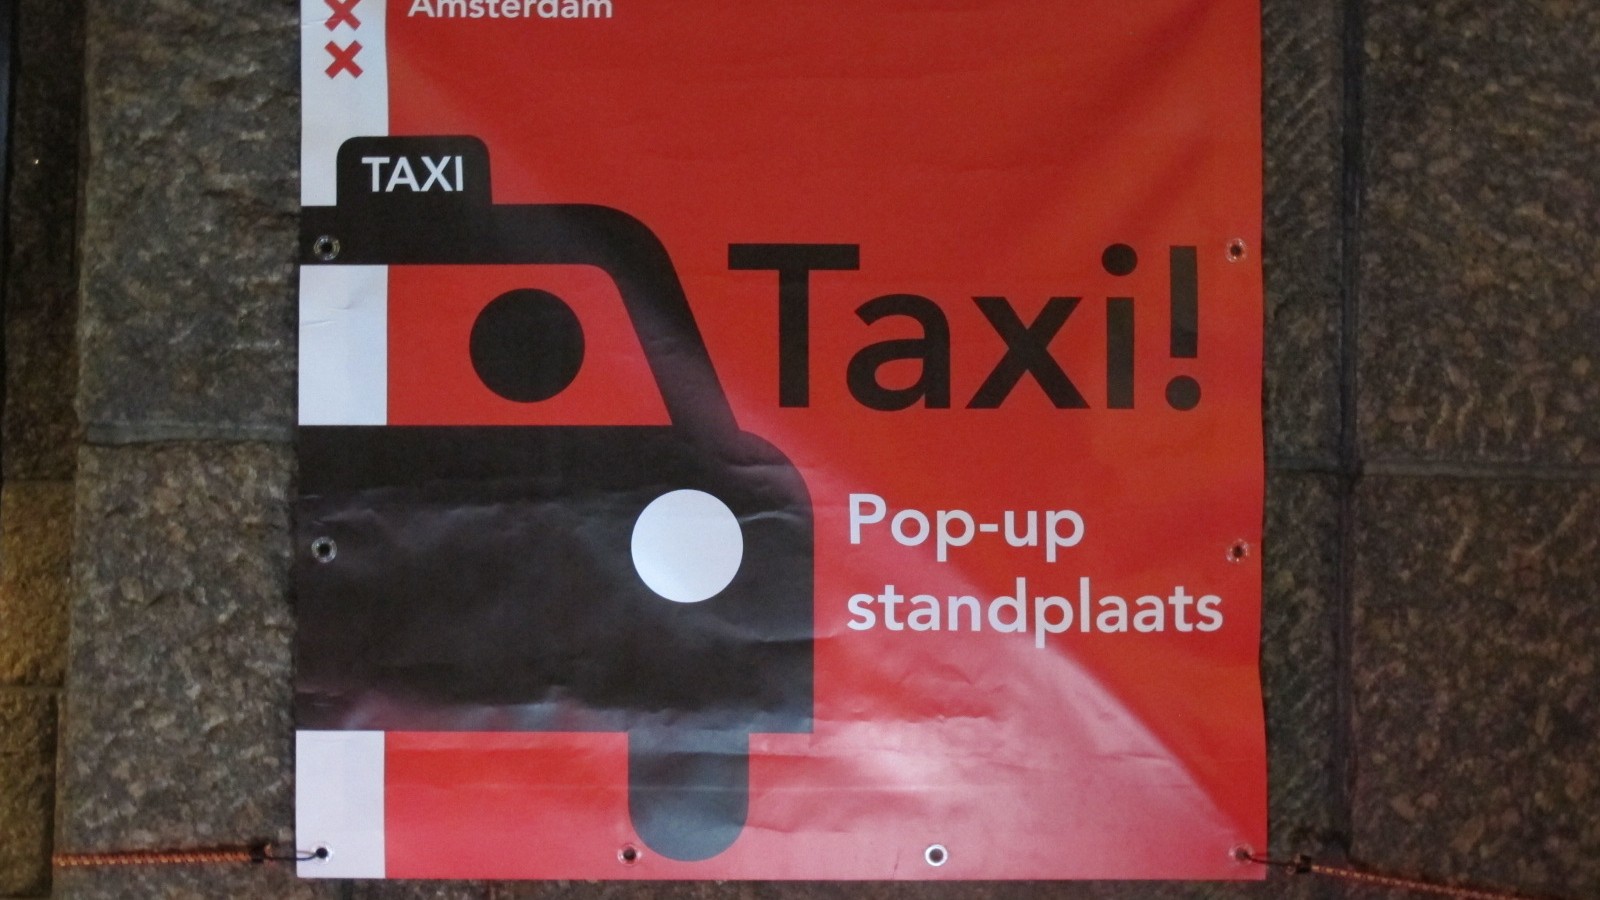 Pop-up taxistandplaats Rembrandtplein in gebruik genomen